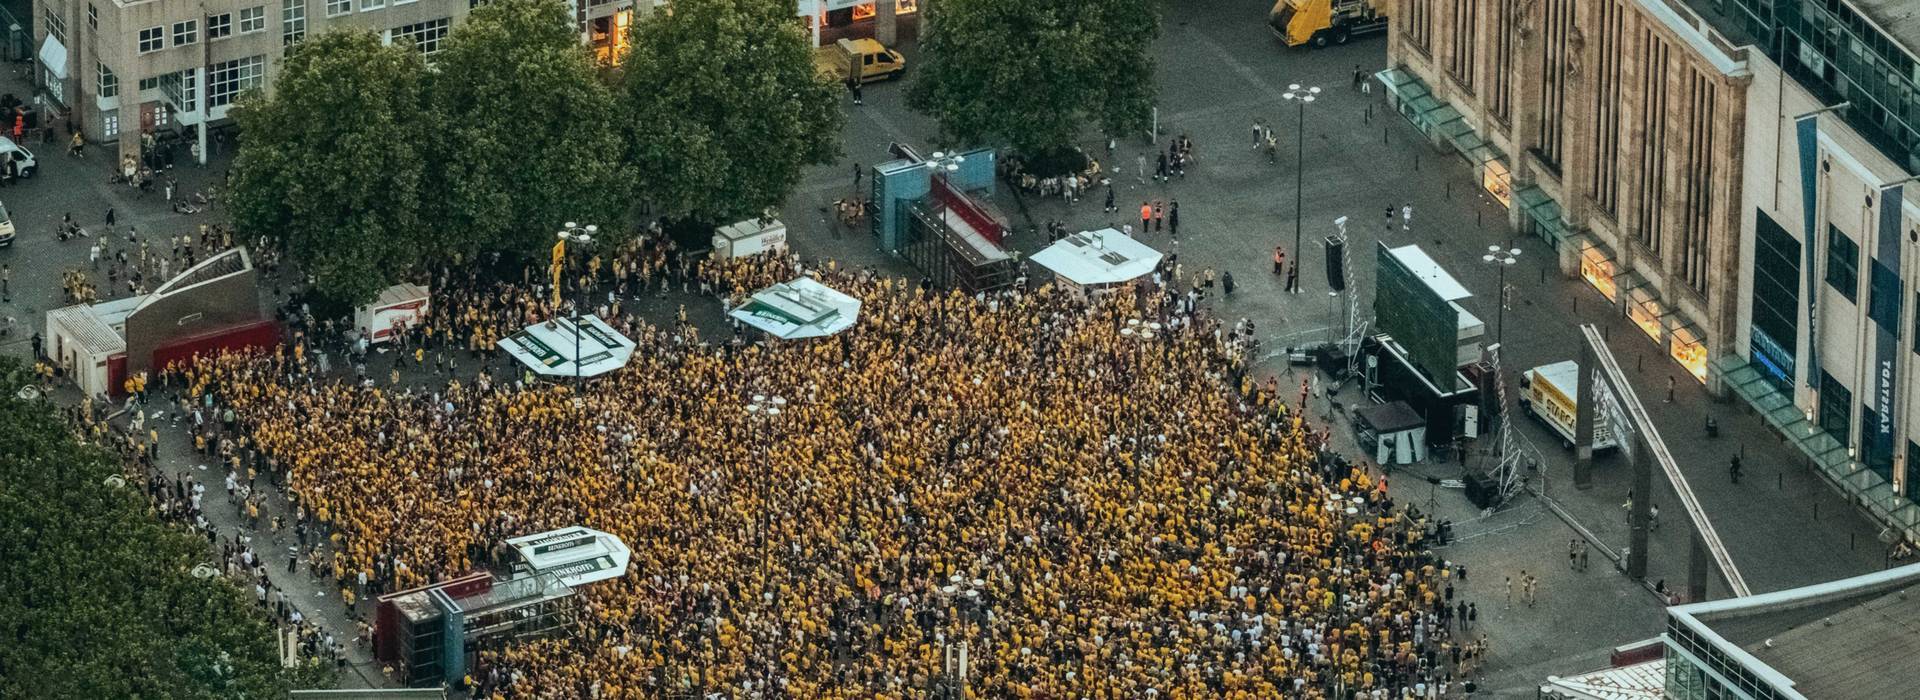 Das Final-Wochenende in Dortmund